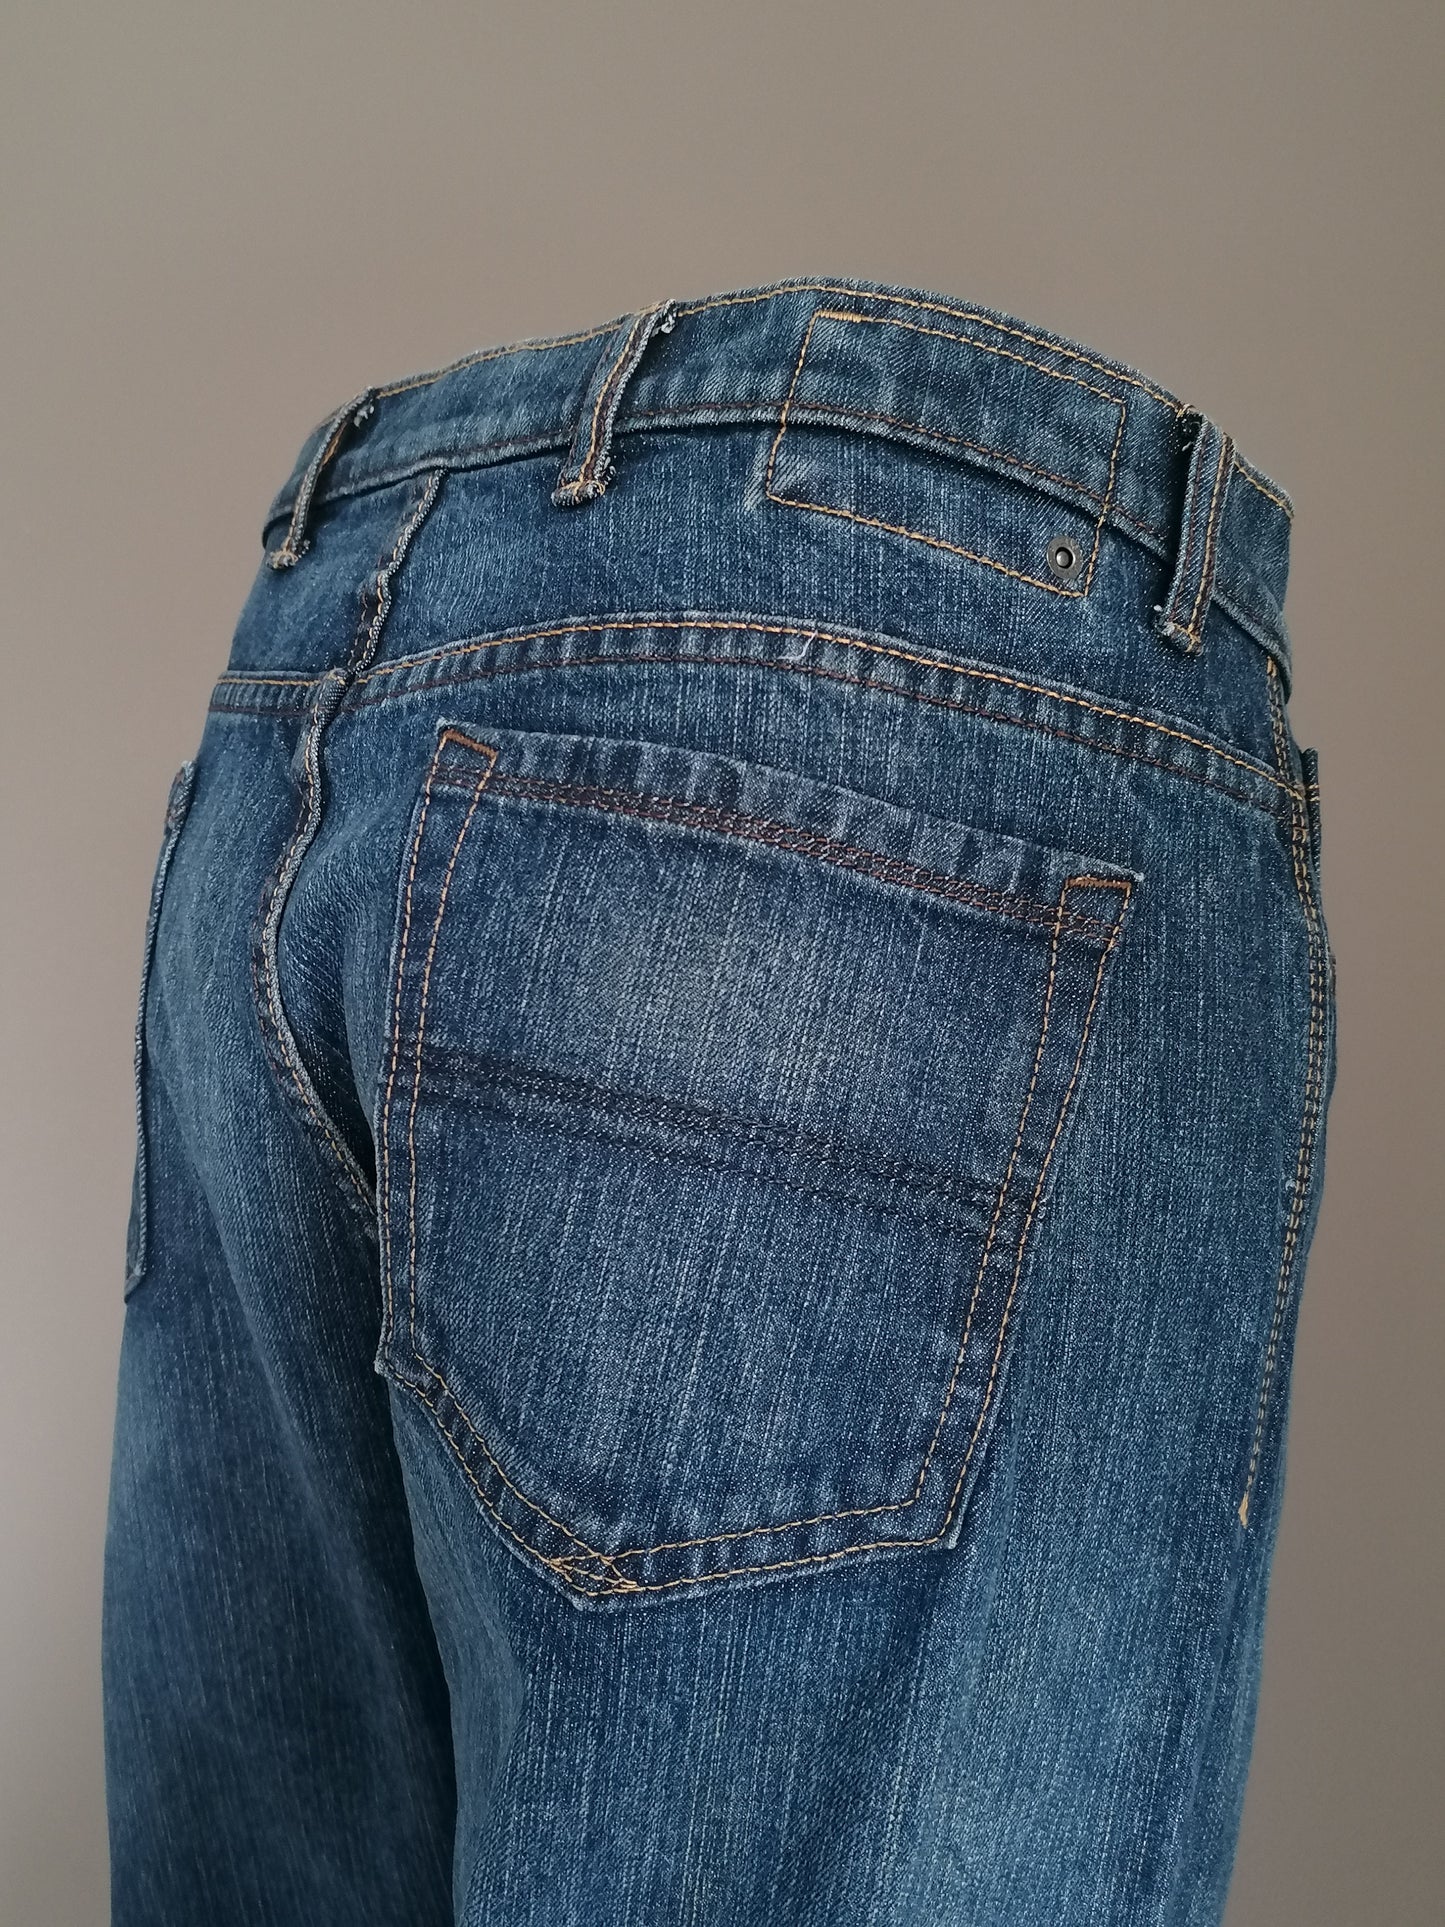 Jeans blu porti. Colorato blu scuro. Taglia W38 - L30.